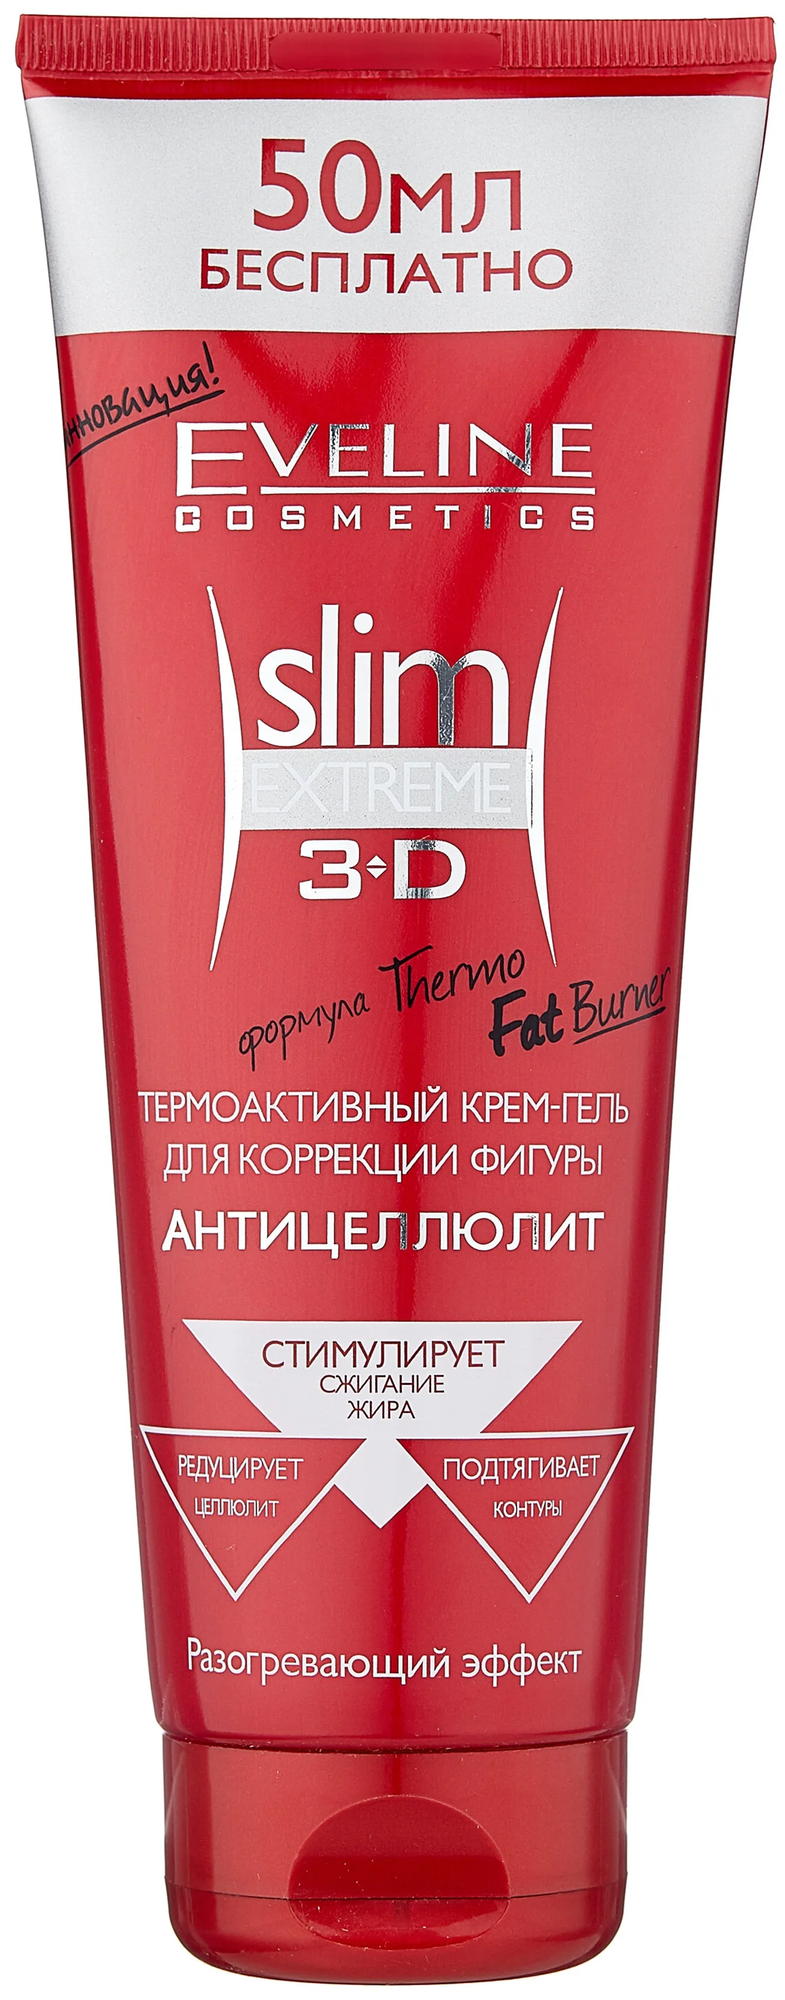 Eveline Cosmetics крем-гель термоактивный для коррекции фигуры Slim Extreme 3D